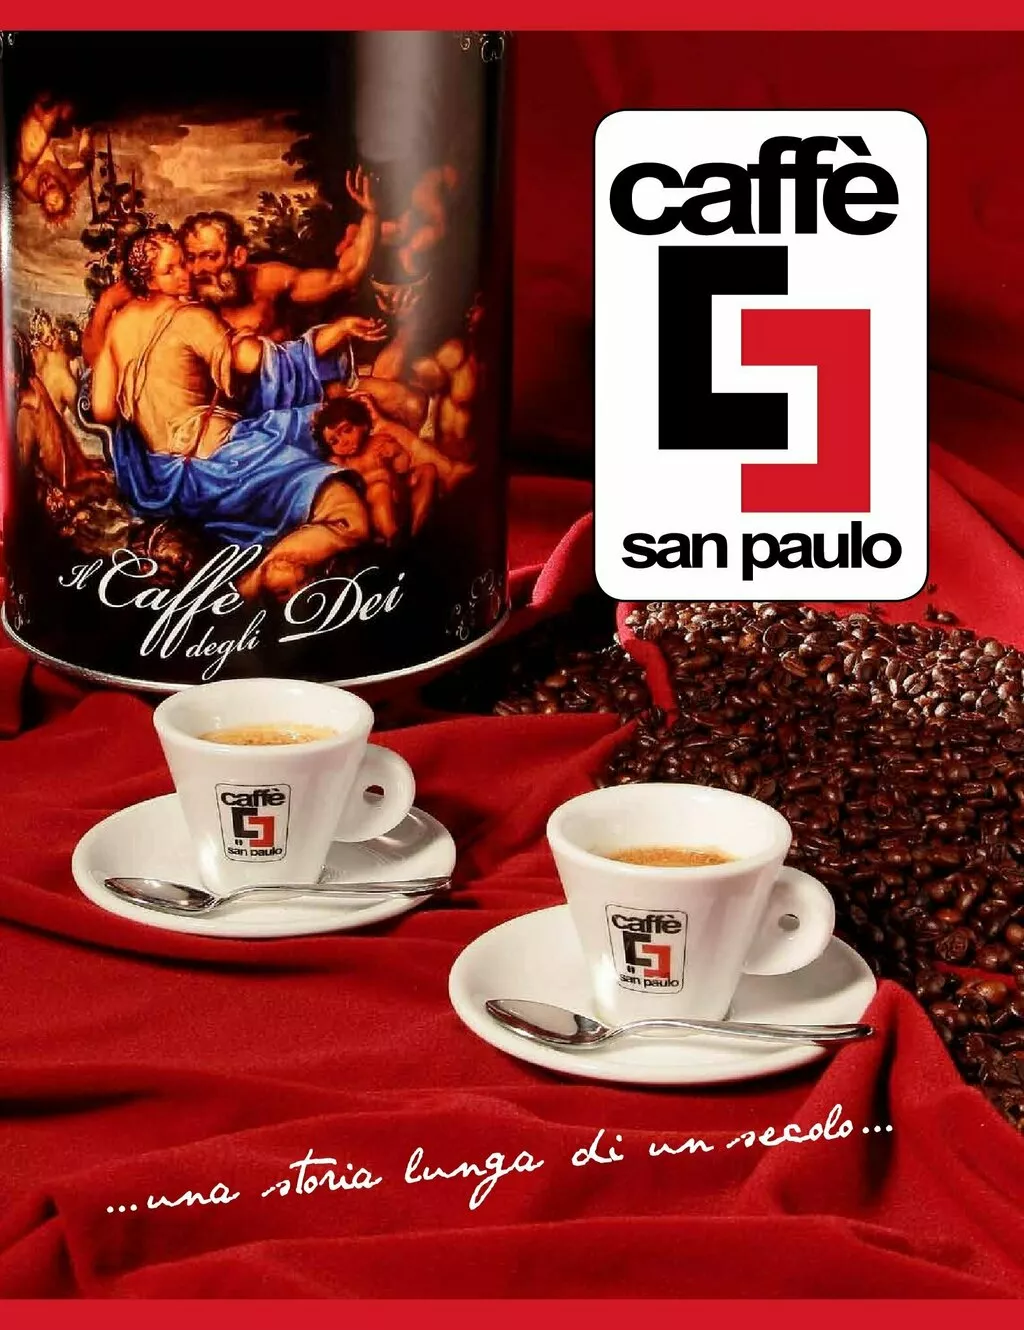 фотография продукта Кофе сaffe san paulo на условиях exw